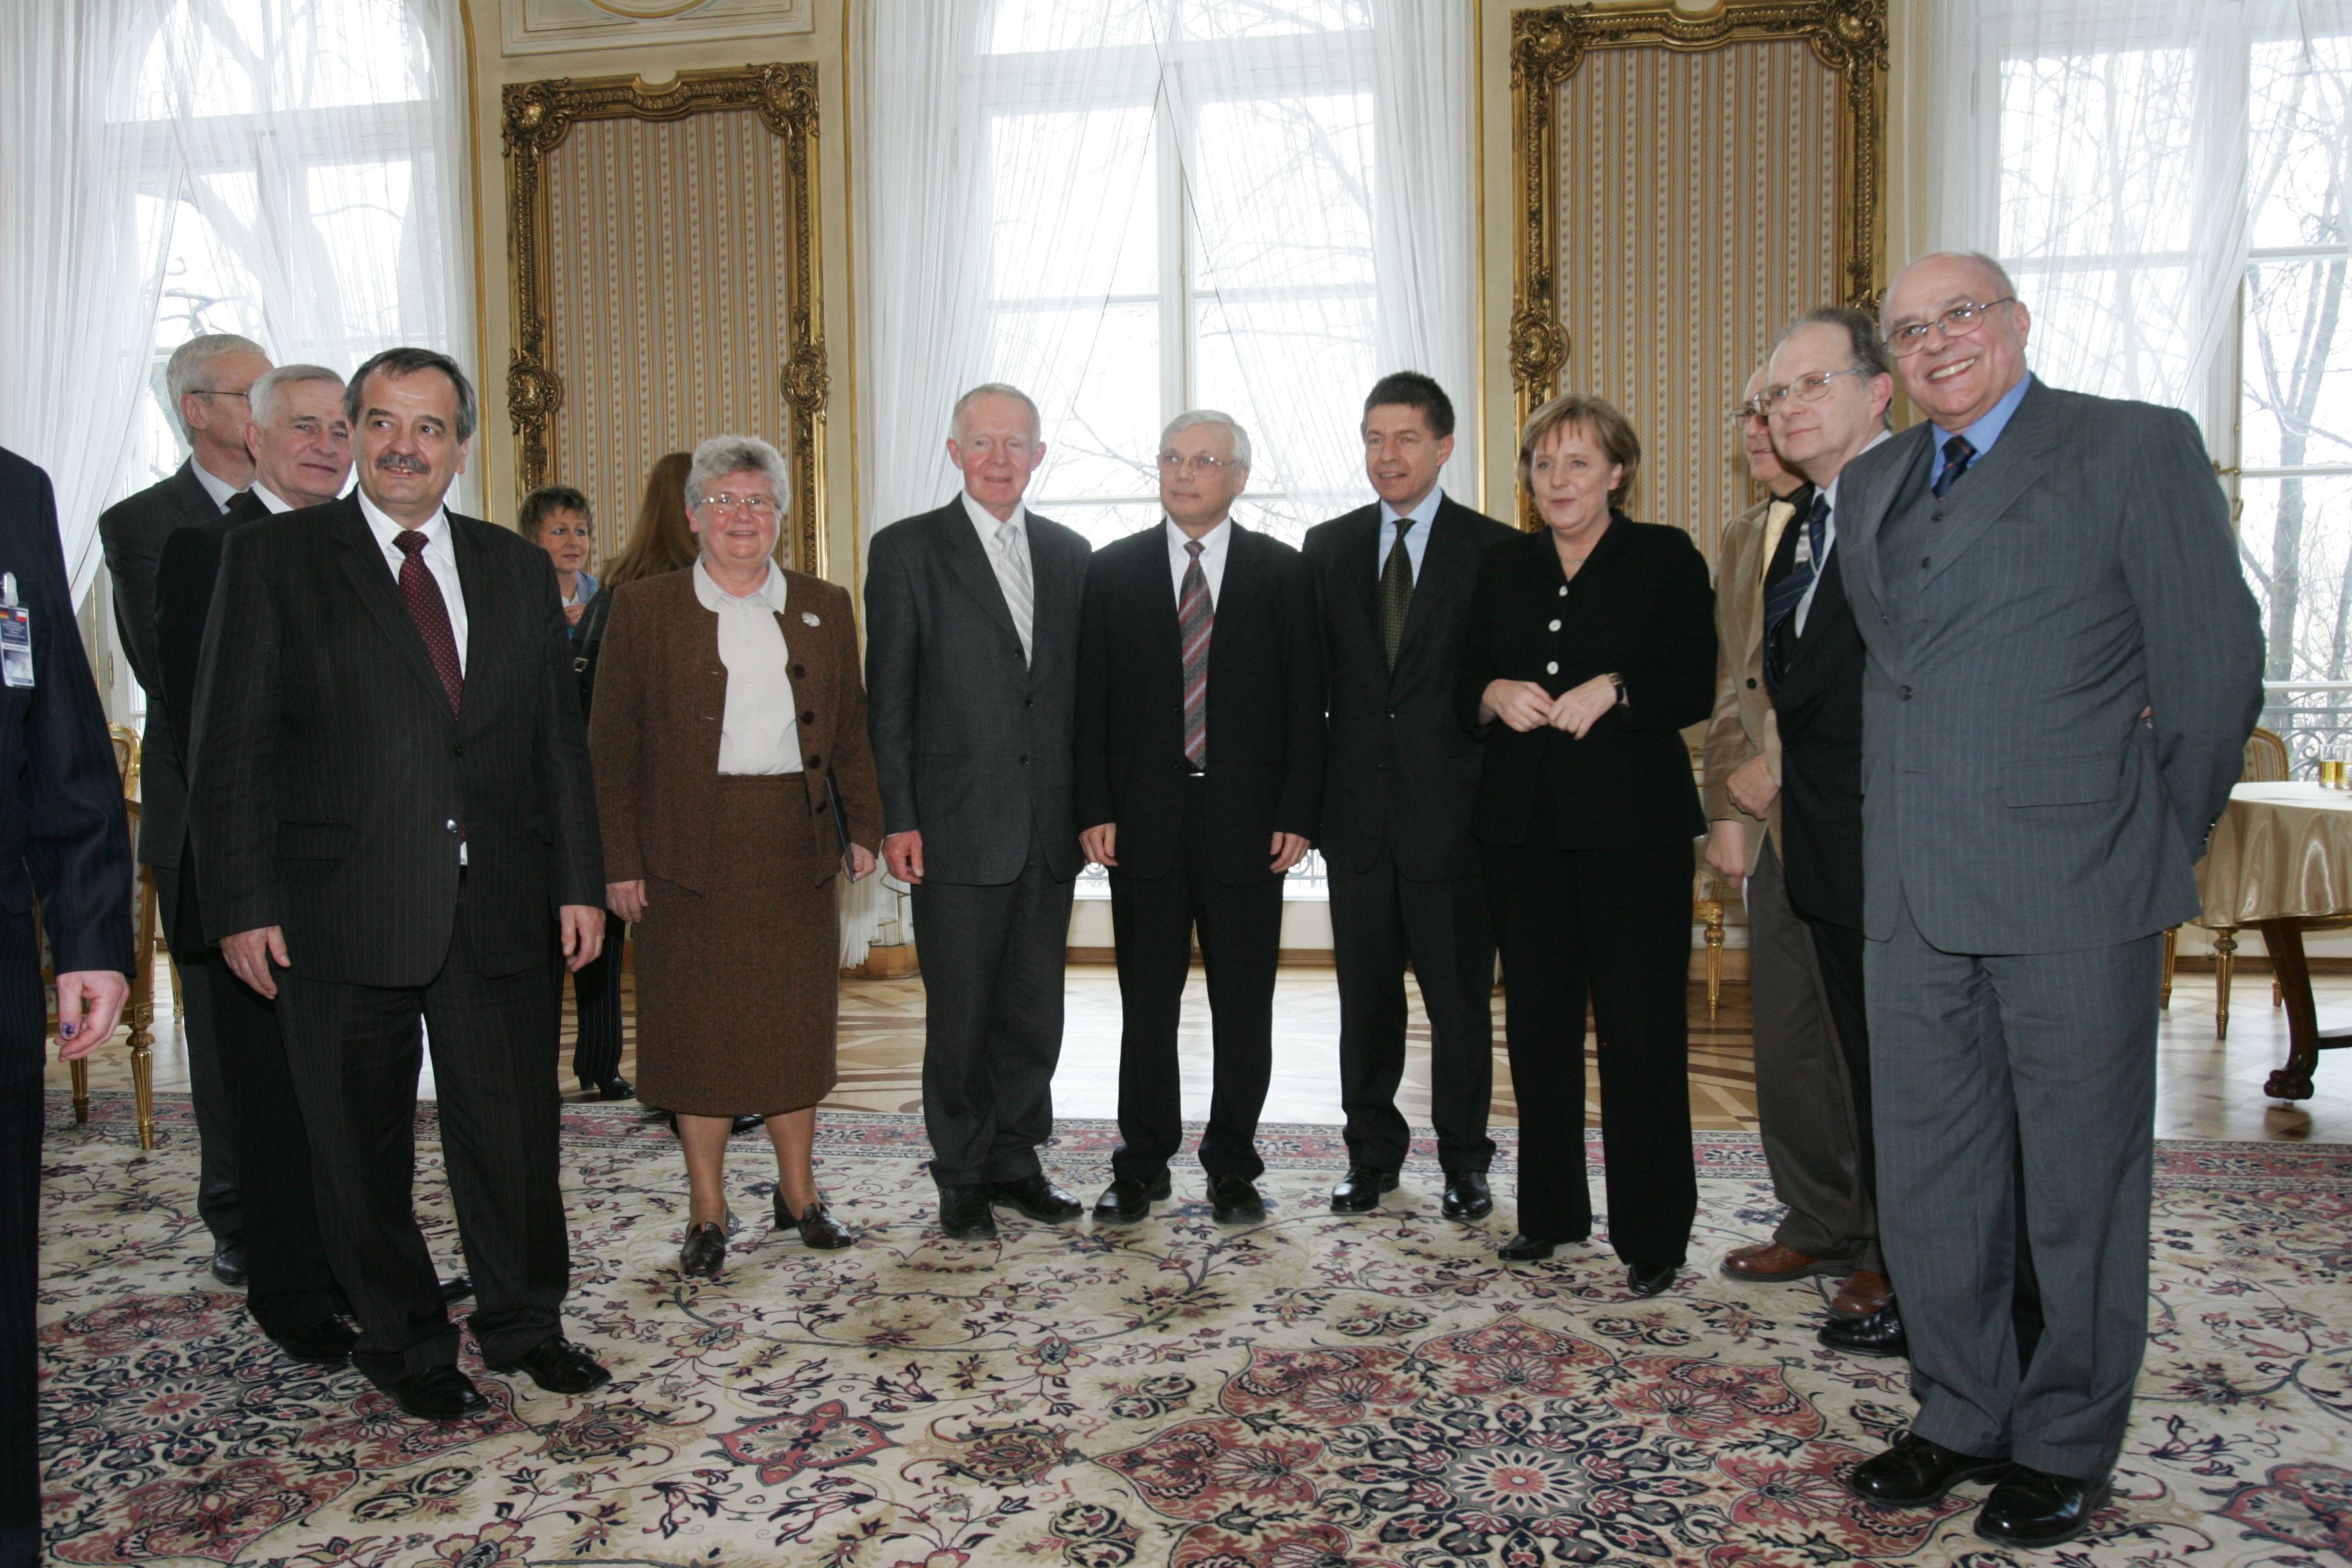 Spotkania Merkel z dawnymi kolegami w 2007 roku. Na zdjęciu widać i Jacka Karwowskiego (siódmy od prawej) i Grzegorza Chałasińskiego (drugi od prawej)